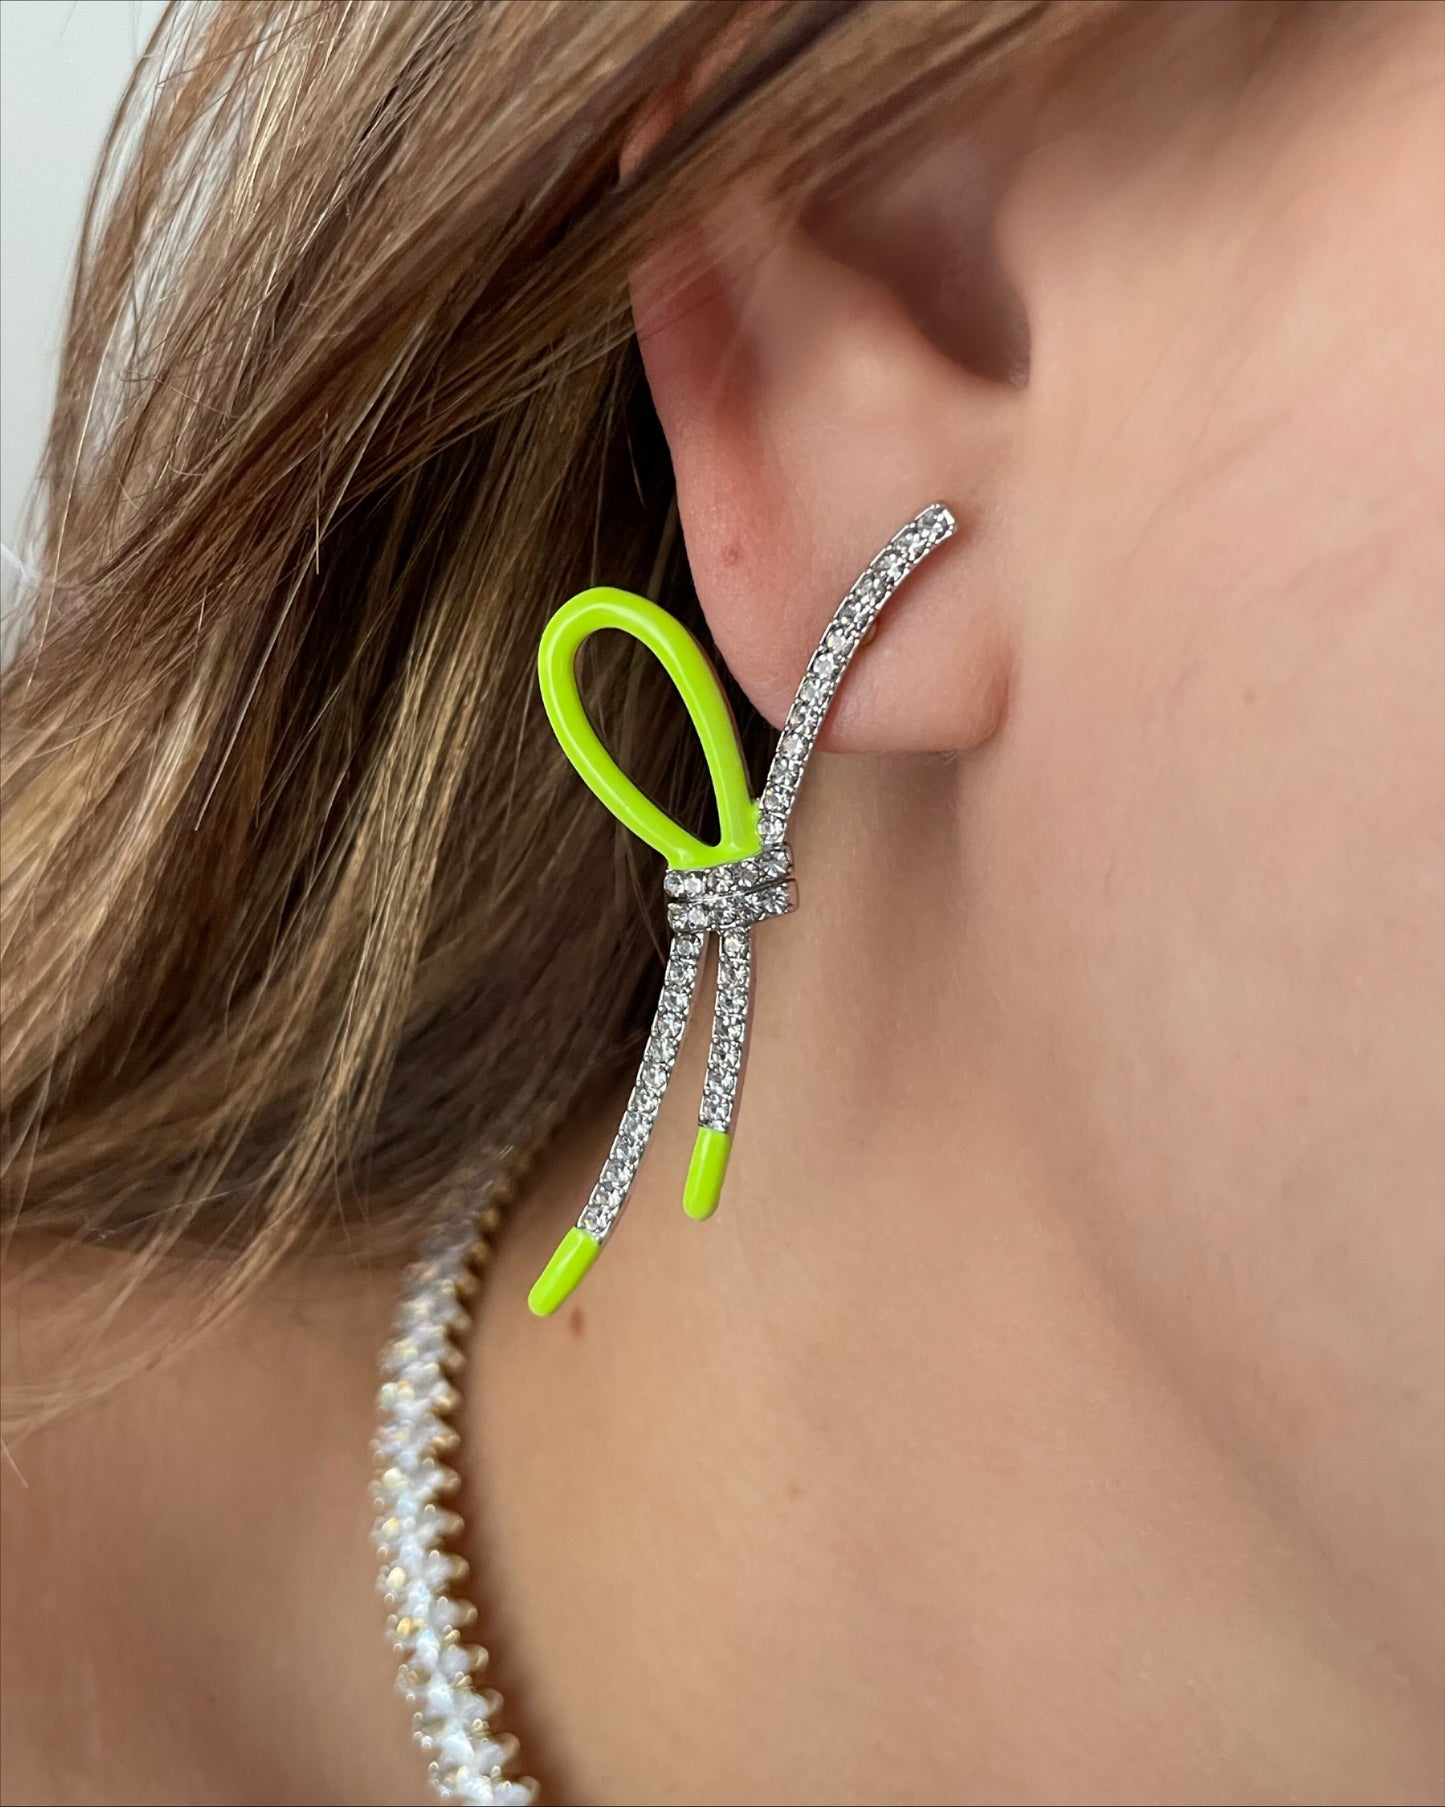 Bow knot earrings